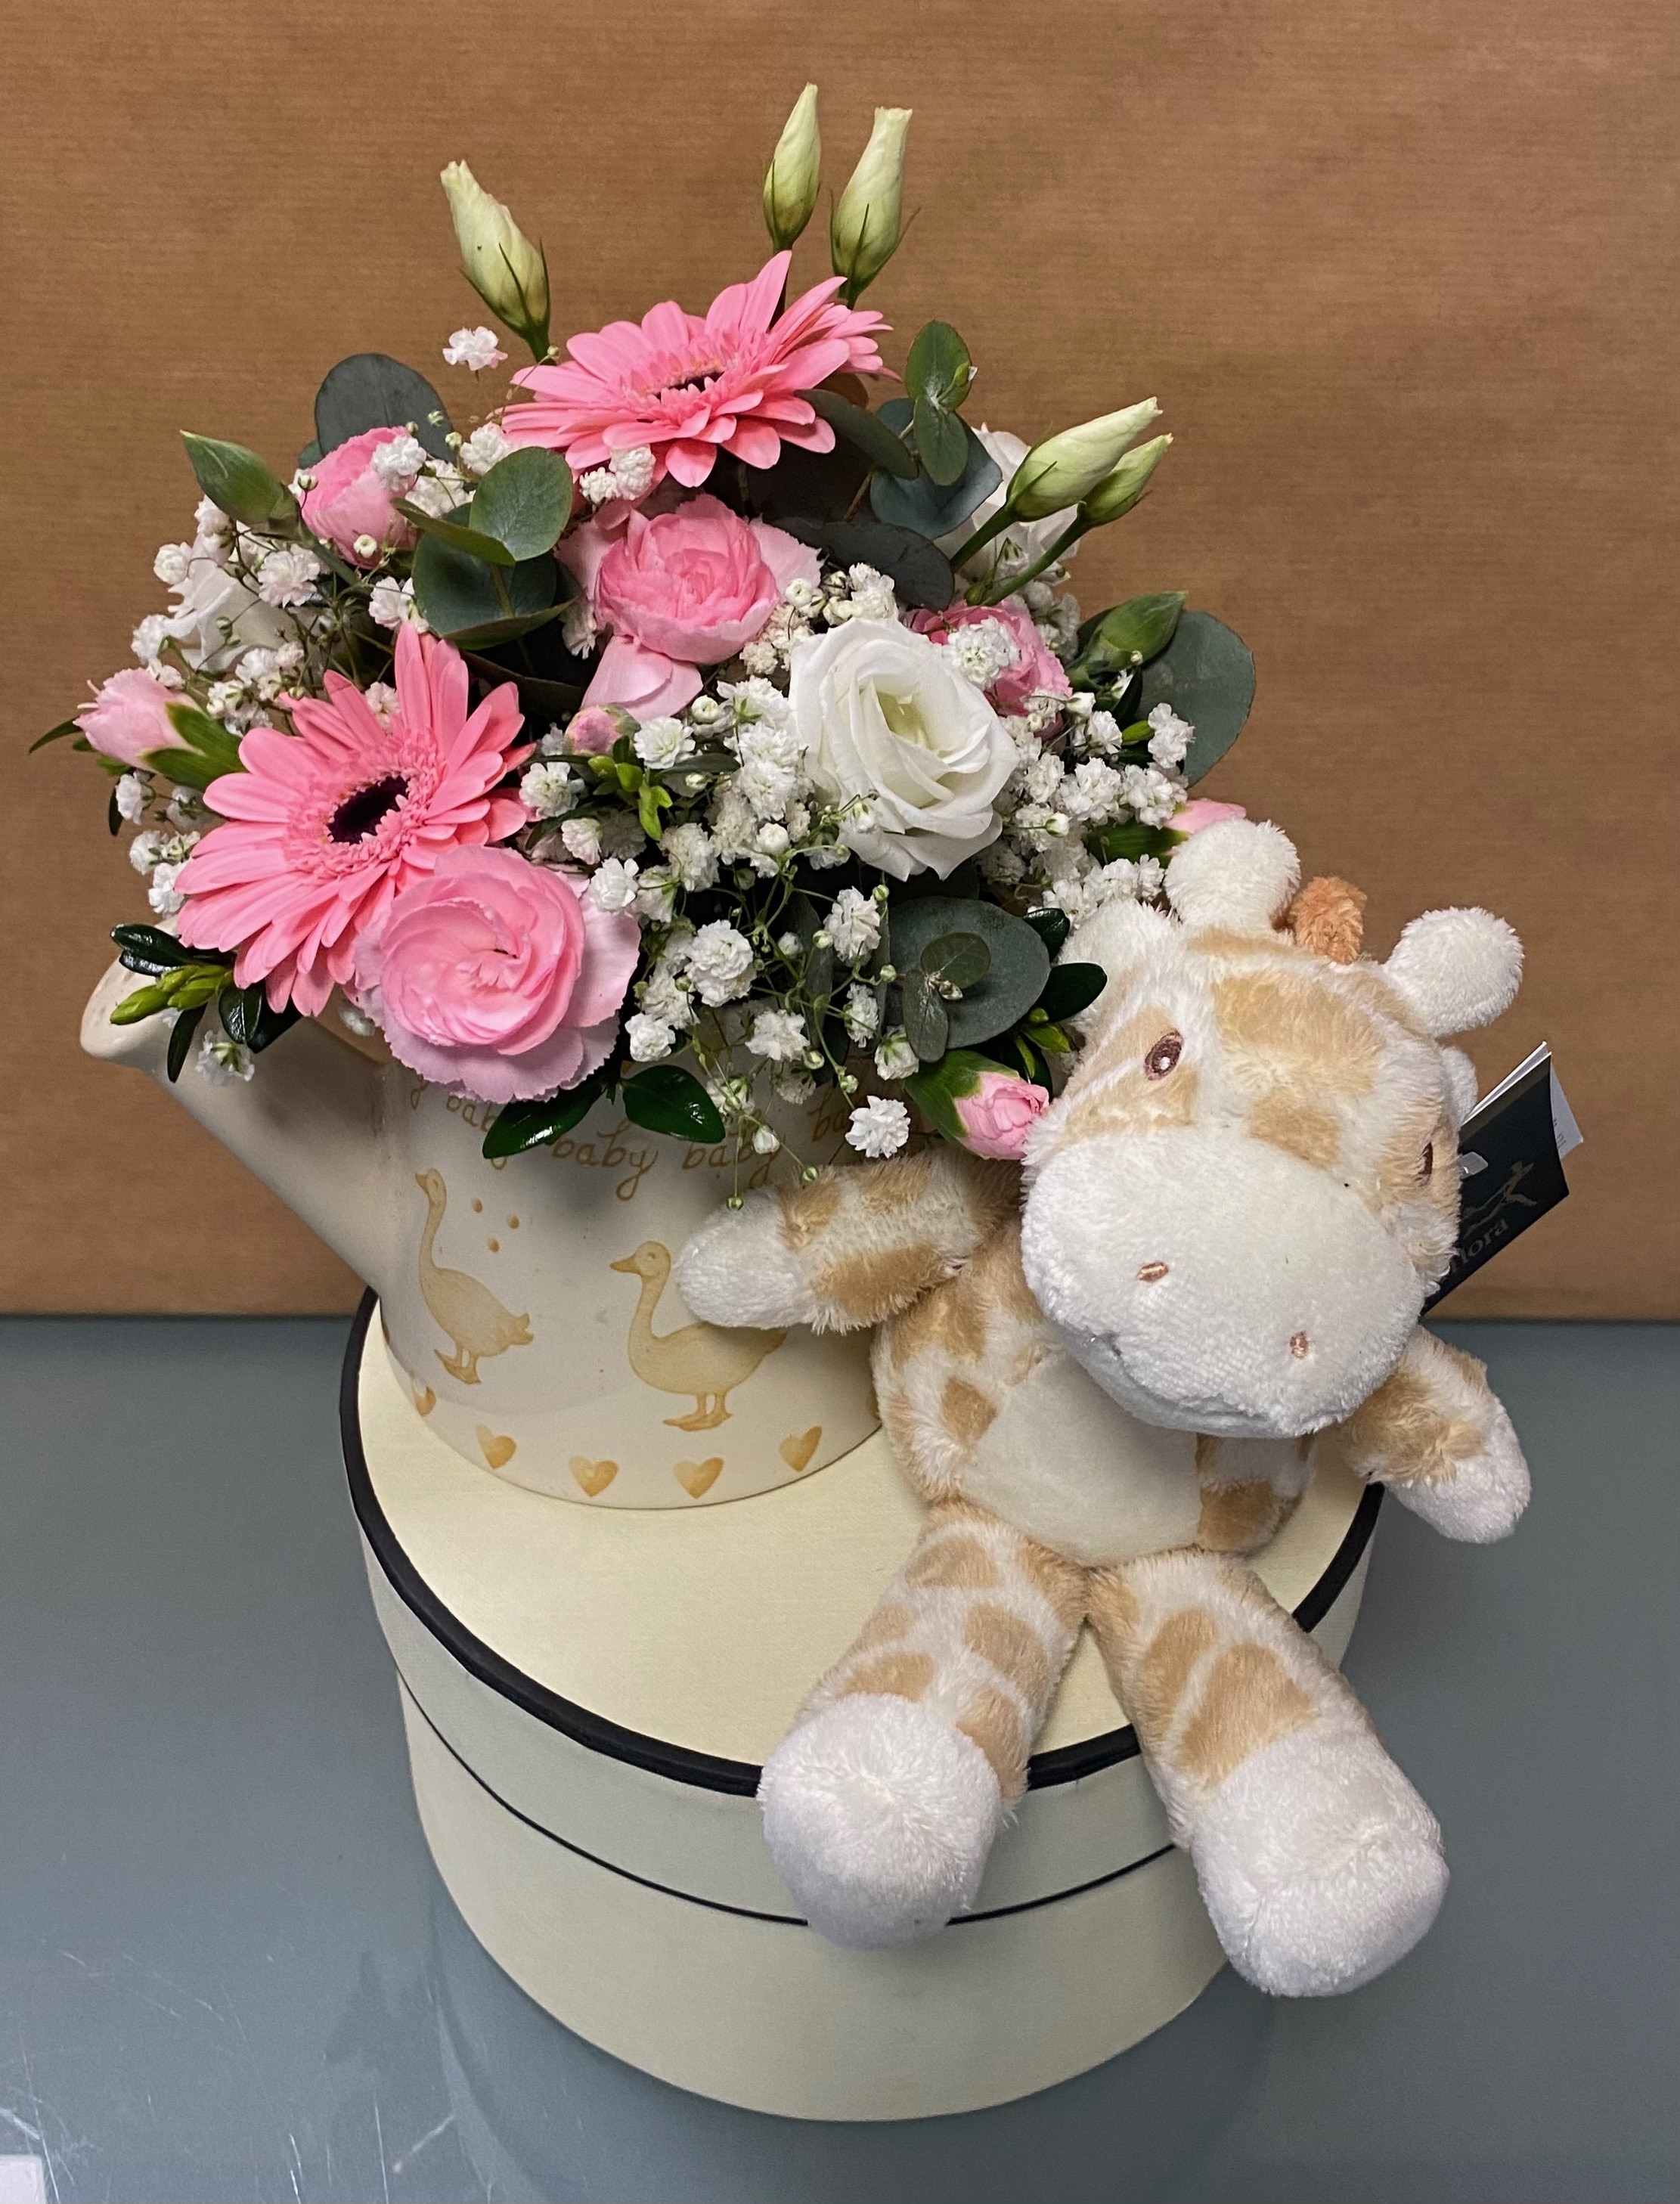 Moores Baby Birth Giraffe Gift Set-Pink Flower Arrangement